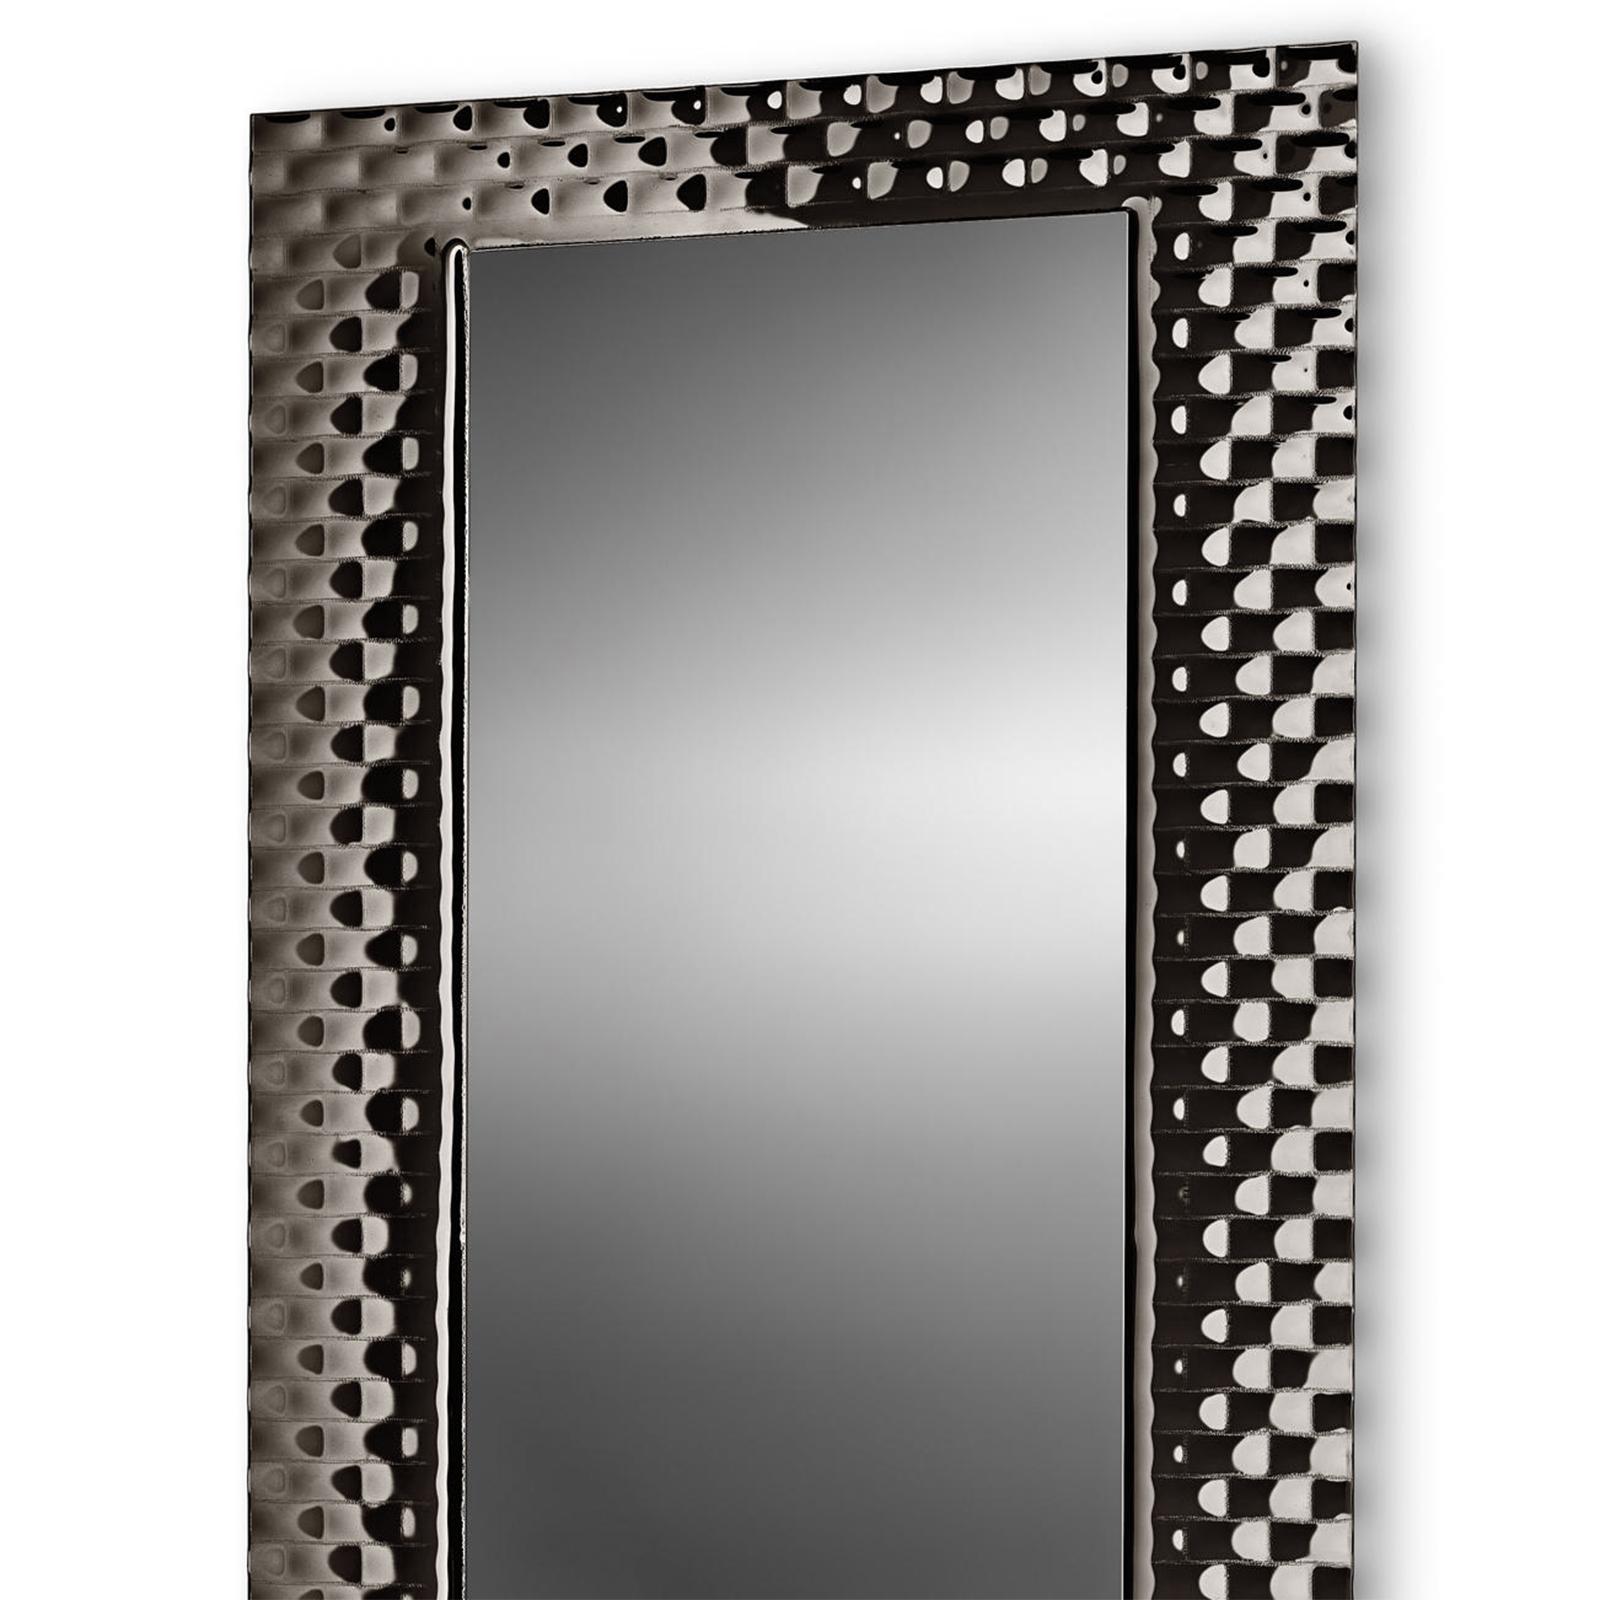 Spiegel schwarzes Herrenhaus rechteckig aus Schmelzglas 6mm
Dicke mit rückseitig verspiegeltem Rahmen. Mit flachem Spiegel in
geräucherte Oberfläche, 5 mm dick.
Auch in Bronze erhältlich.